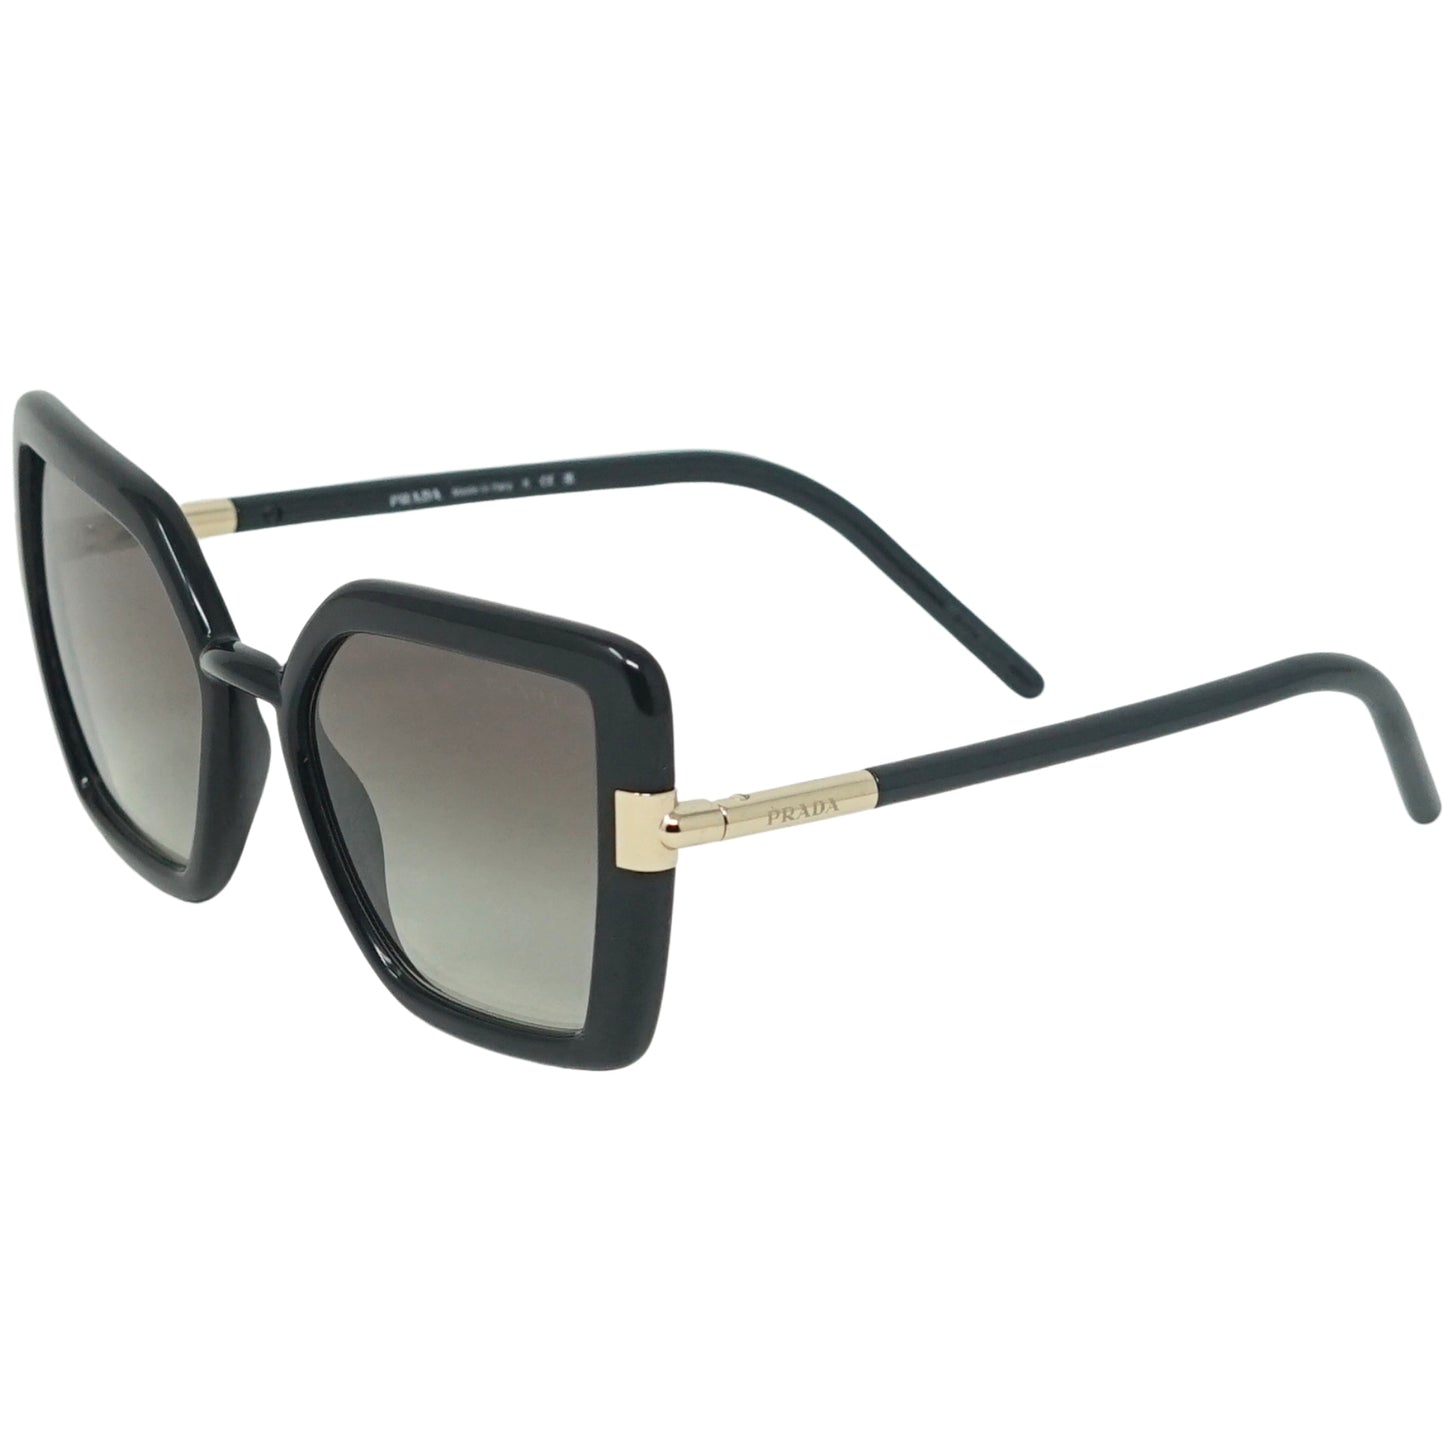 Prada PR09WS 1AB0A7 Black Sunglasses